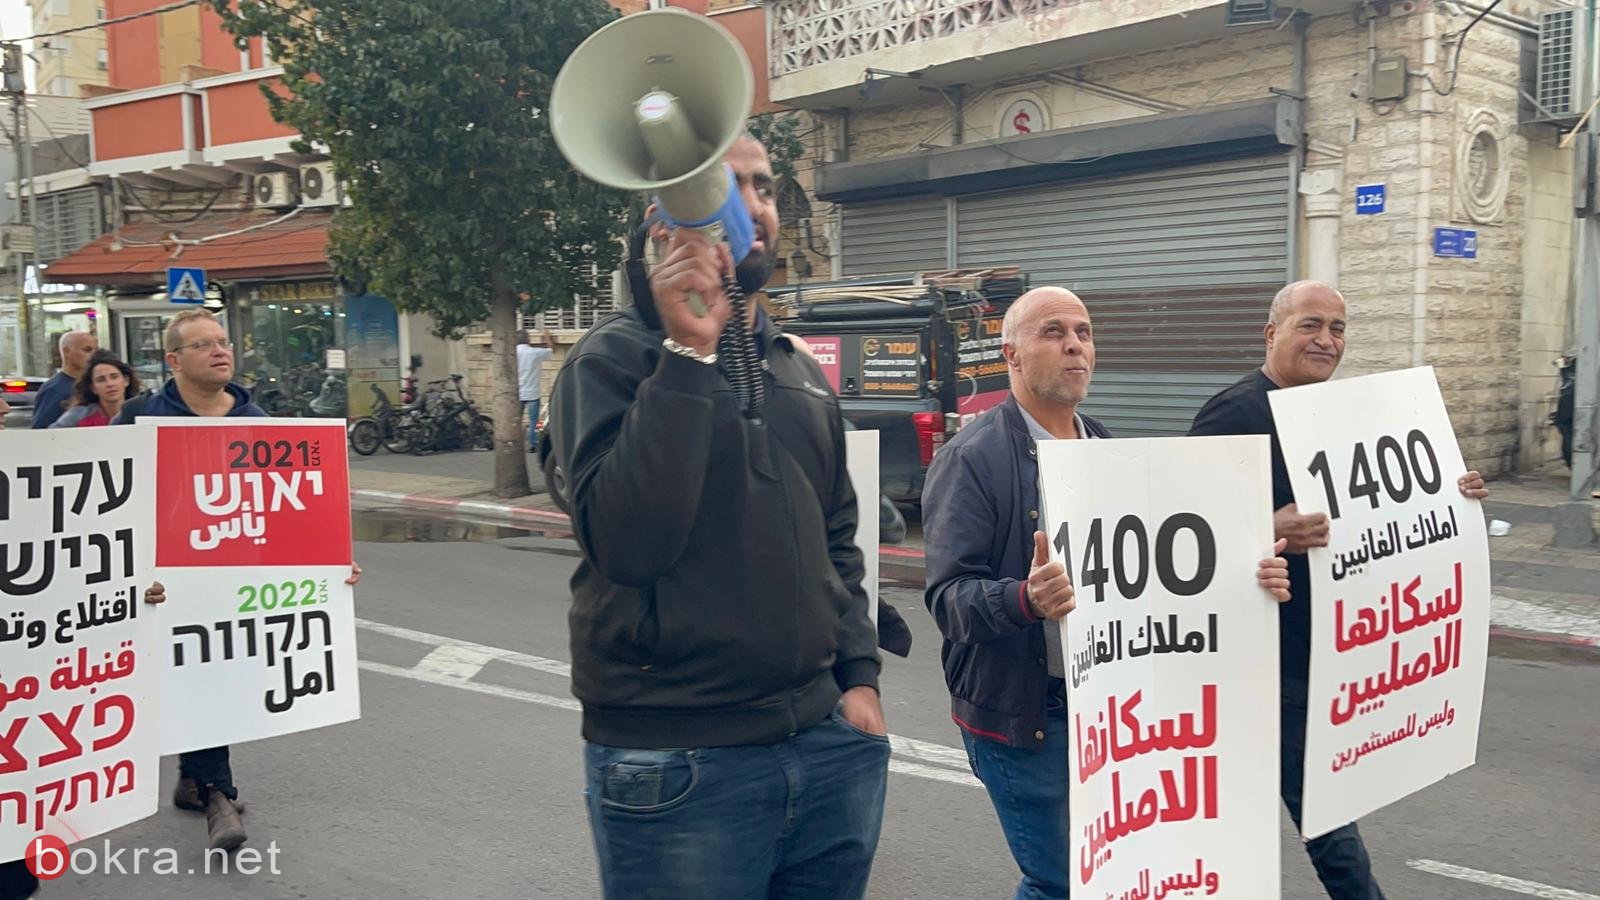 يافا: وقفة احتجاجية للمطالبة بتصحيح الغبن التاريخي بحق السكان العرب-18